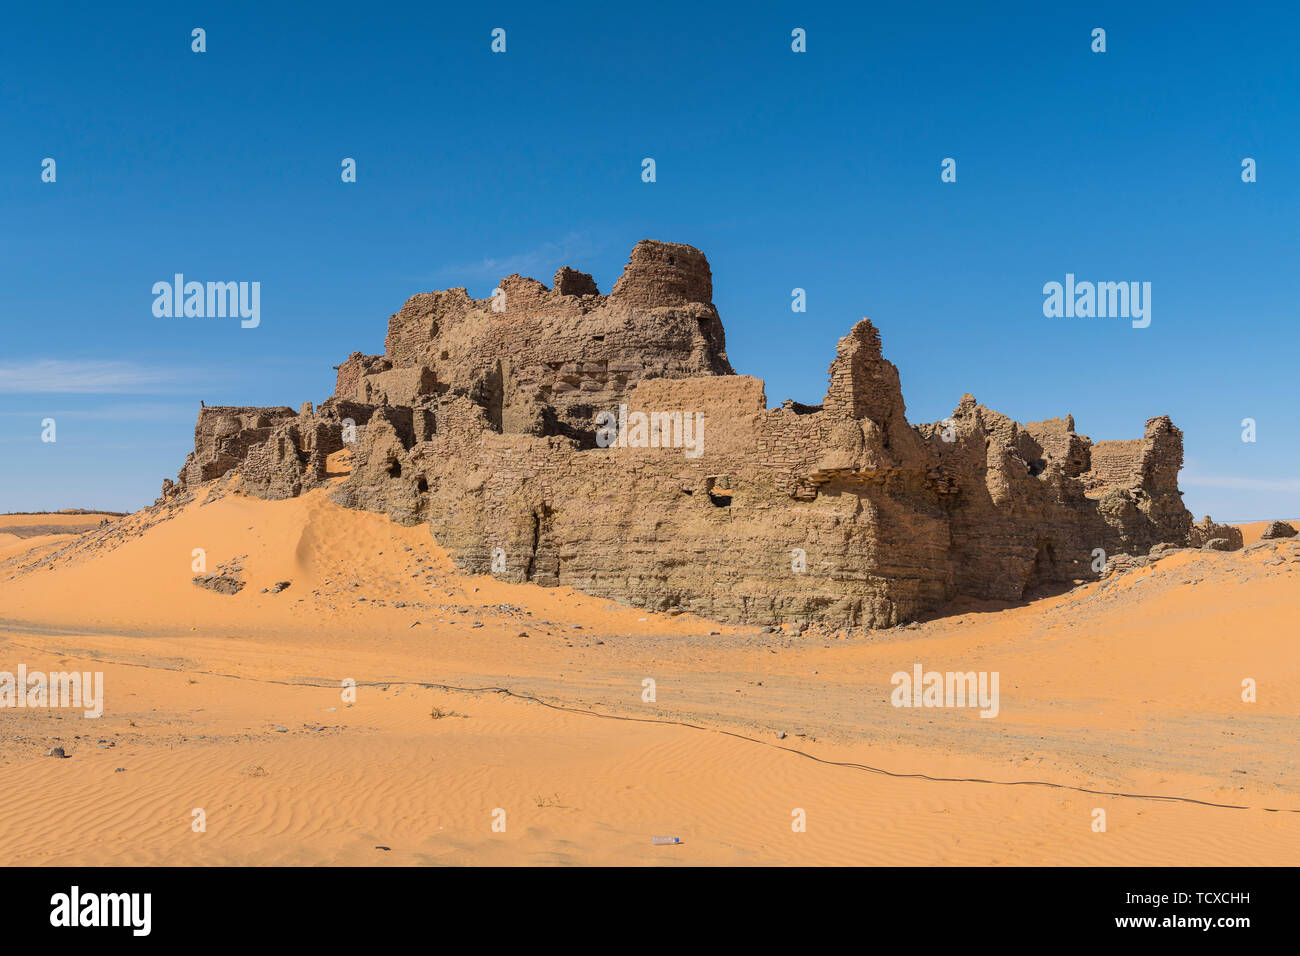 Vieux ksar, vieille ville dans le désert du Sahara, près de Timimoun, dans l'ouest de l'Algérie, l'Afrique du Nord, Afrique Banque D'Images